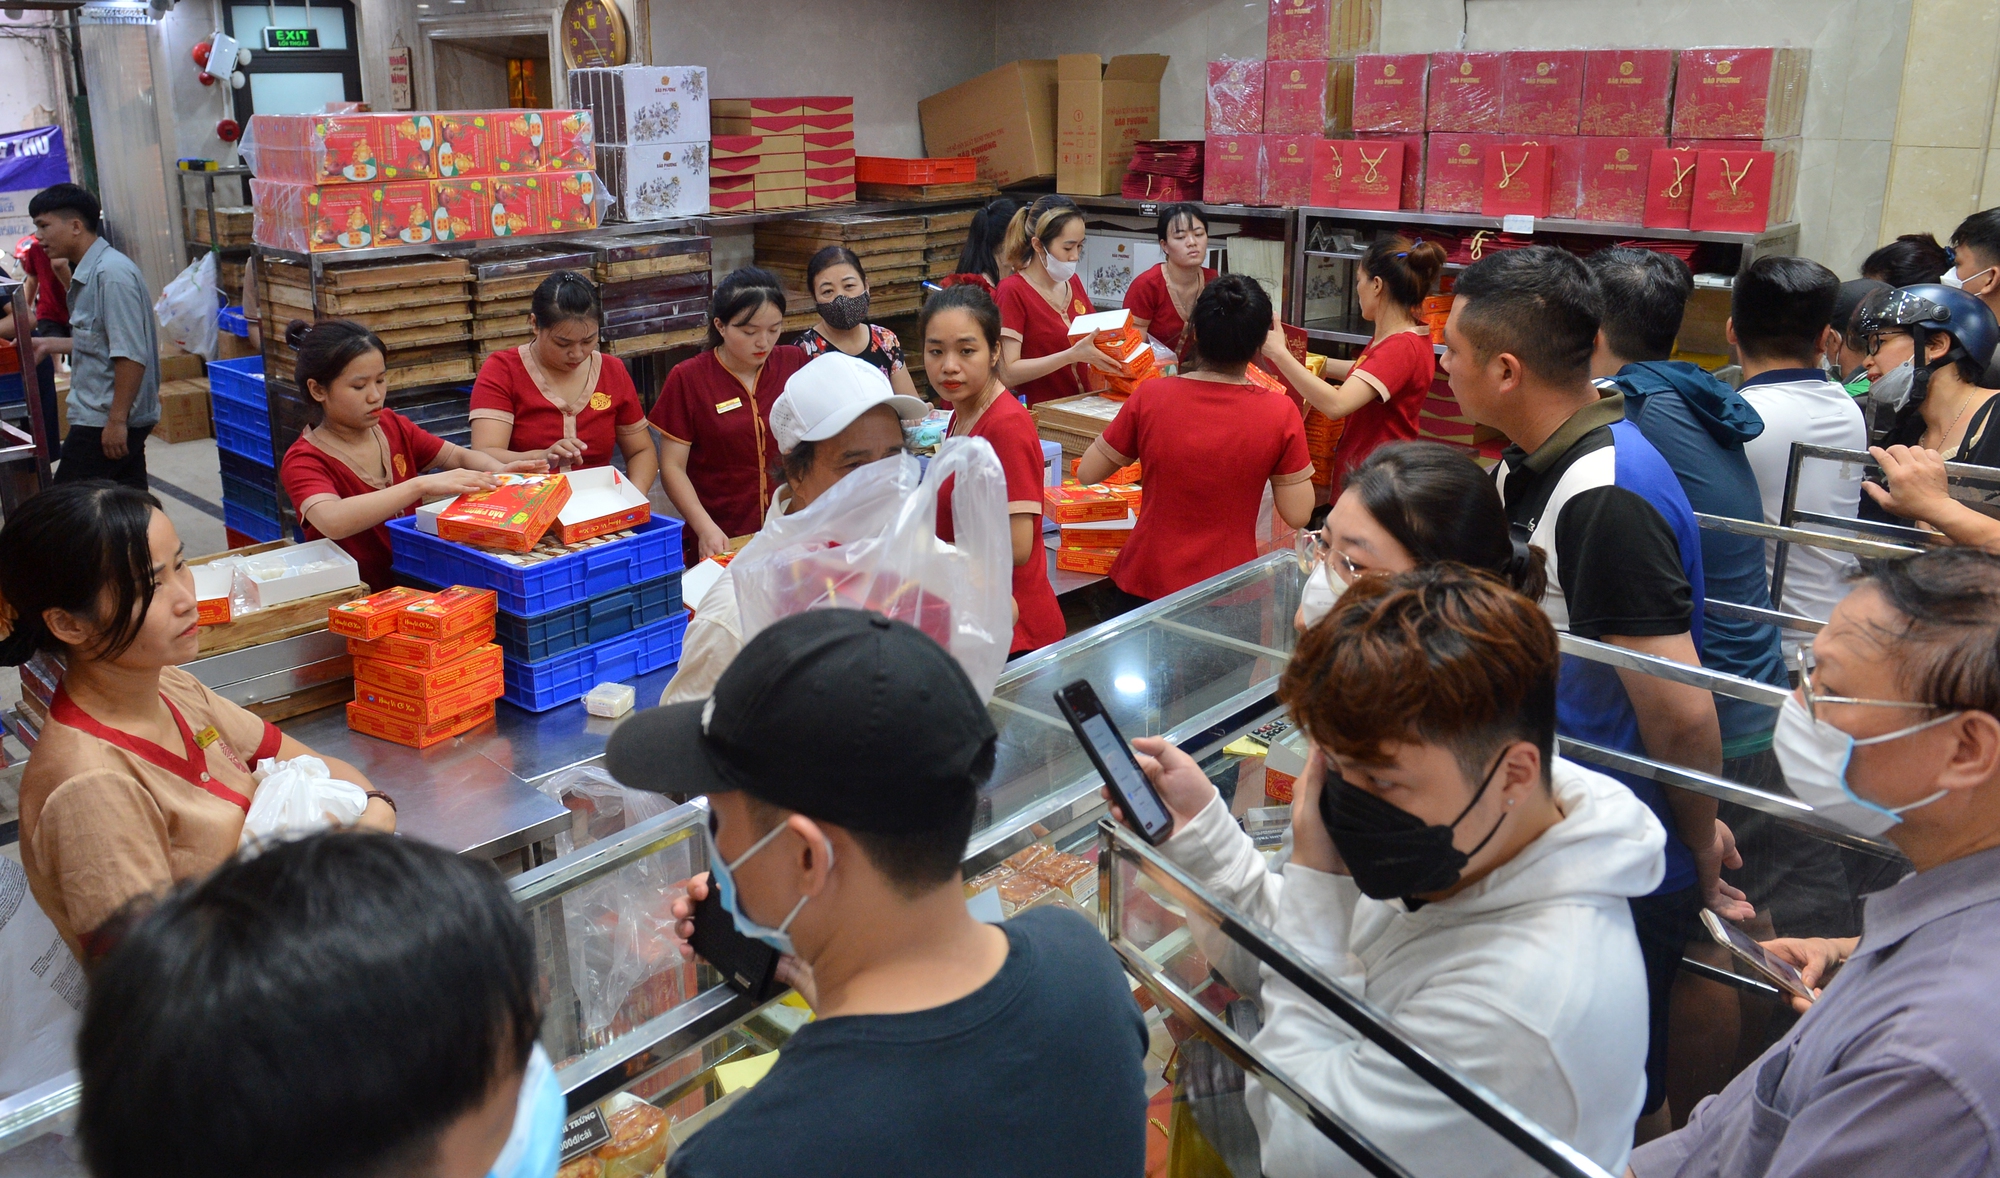 Hà Nội: Người dân xếp hàng dài, chờ cả tiếng đợi mua bánh trung thu truyền thống - Ảnh 6.